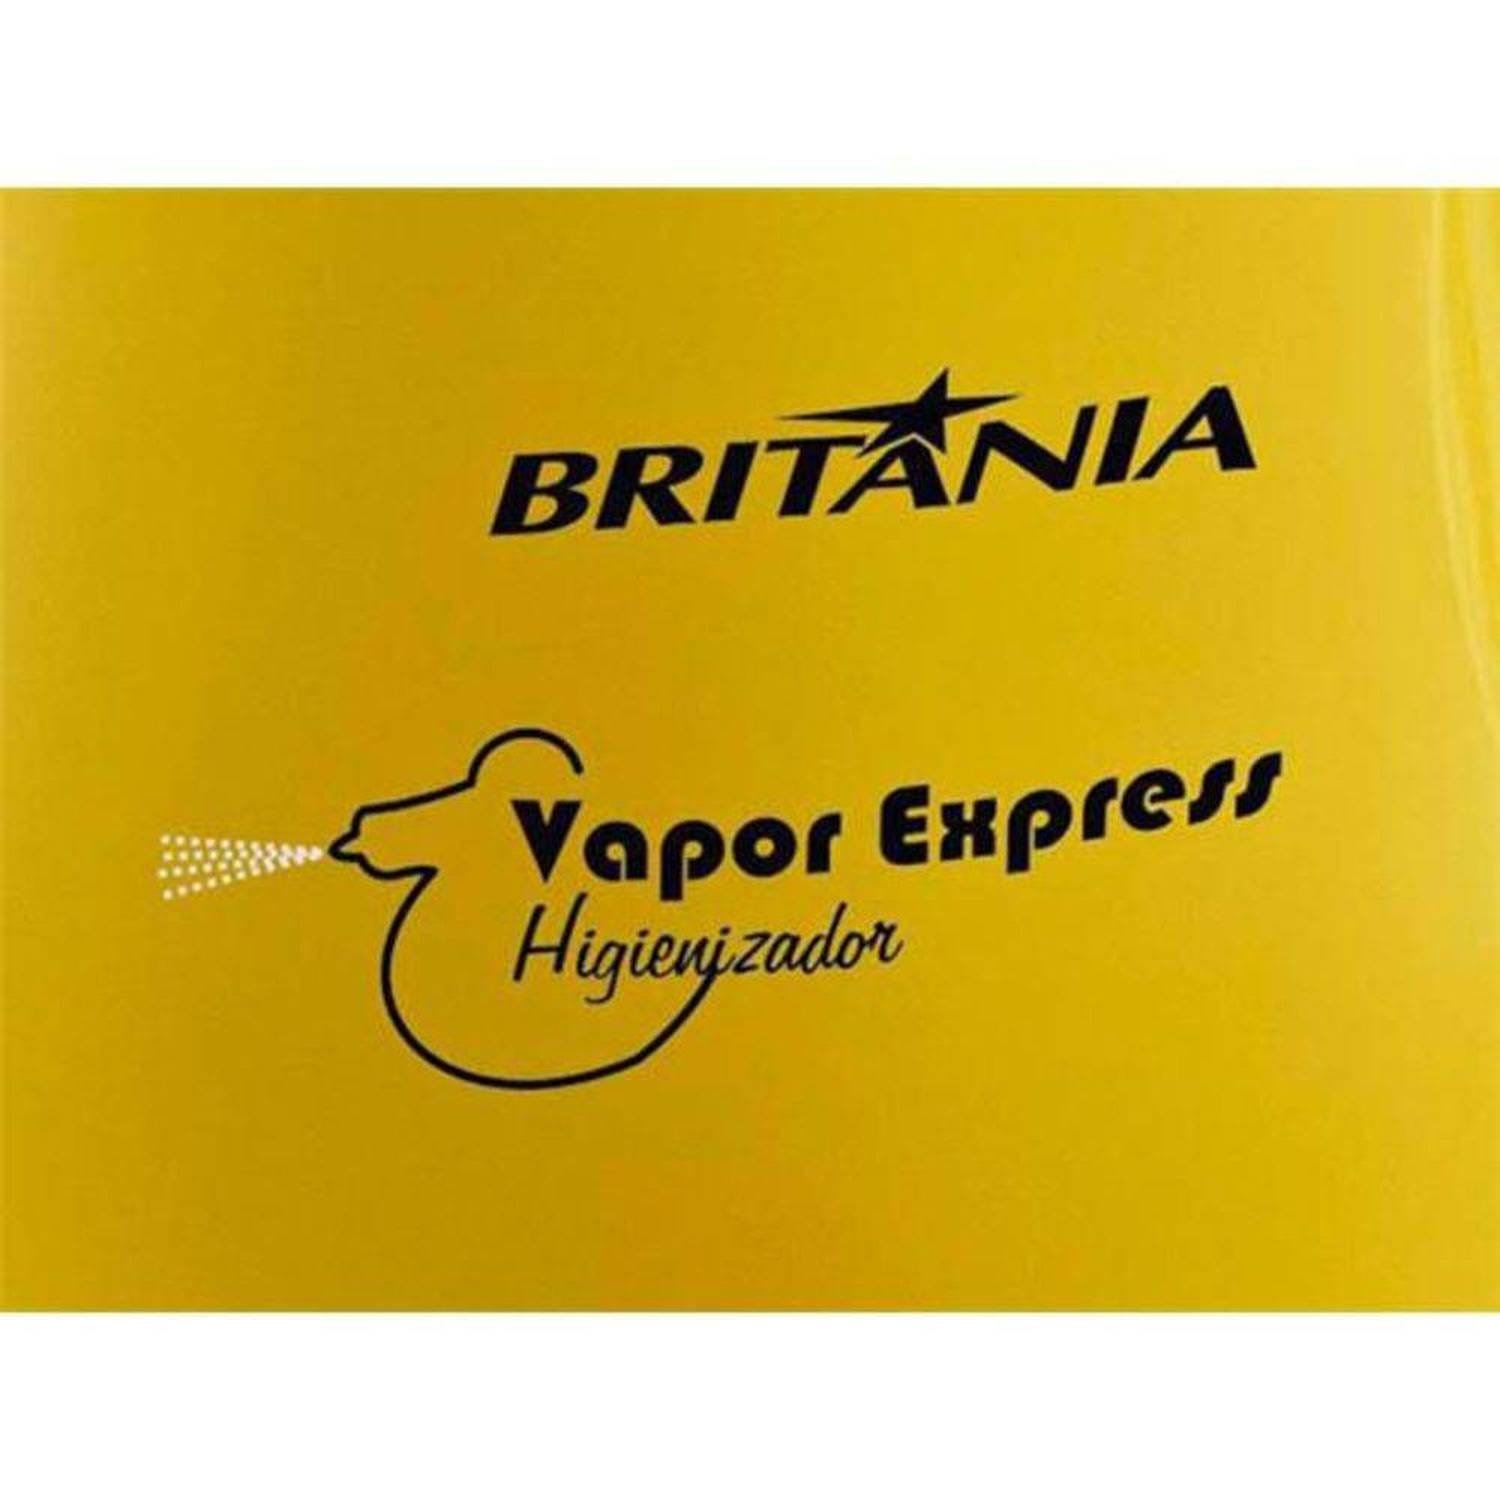 Vaporizador / Higienizador Britânia Vapor Express - 110V - 7